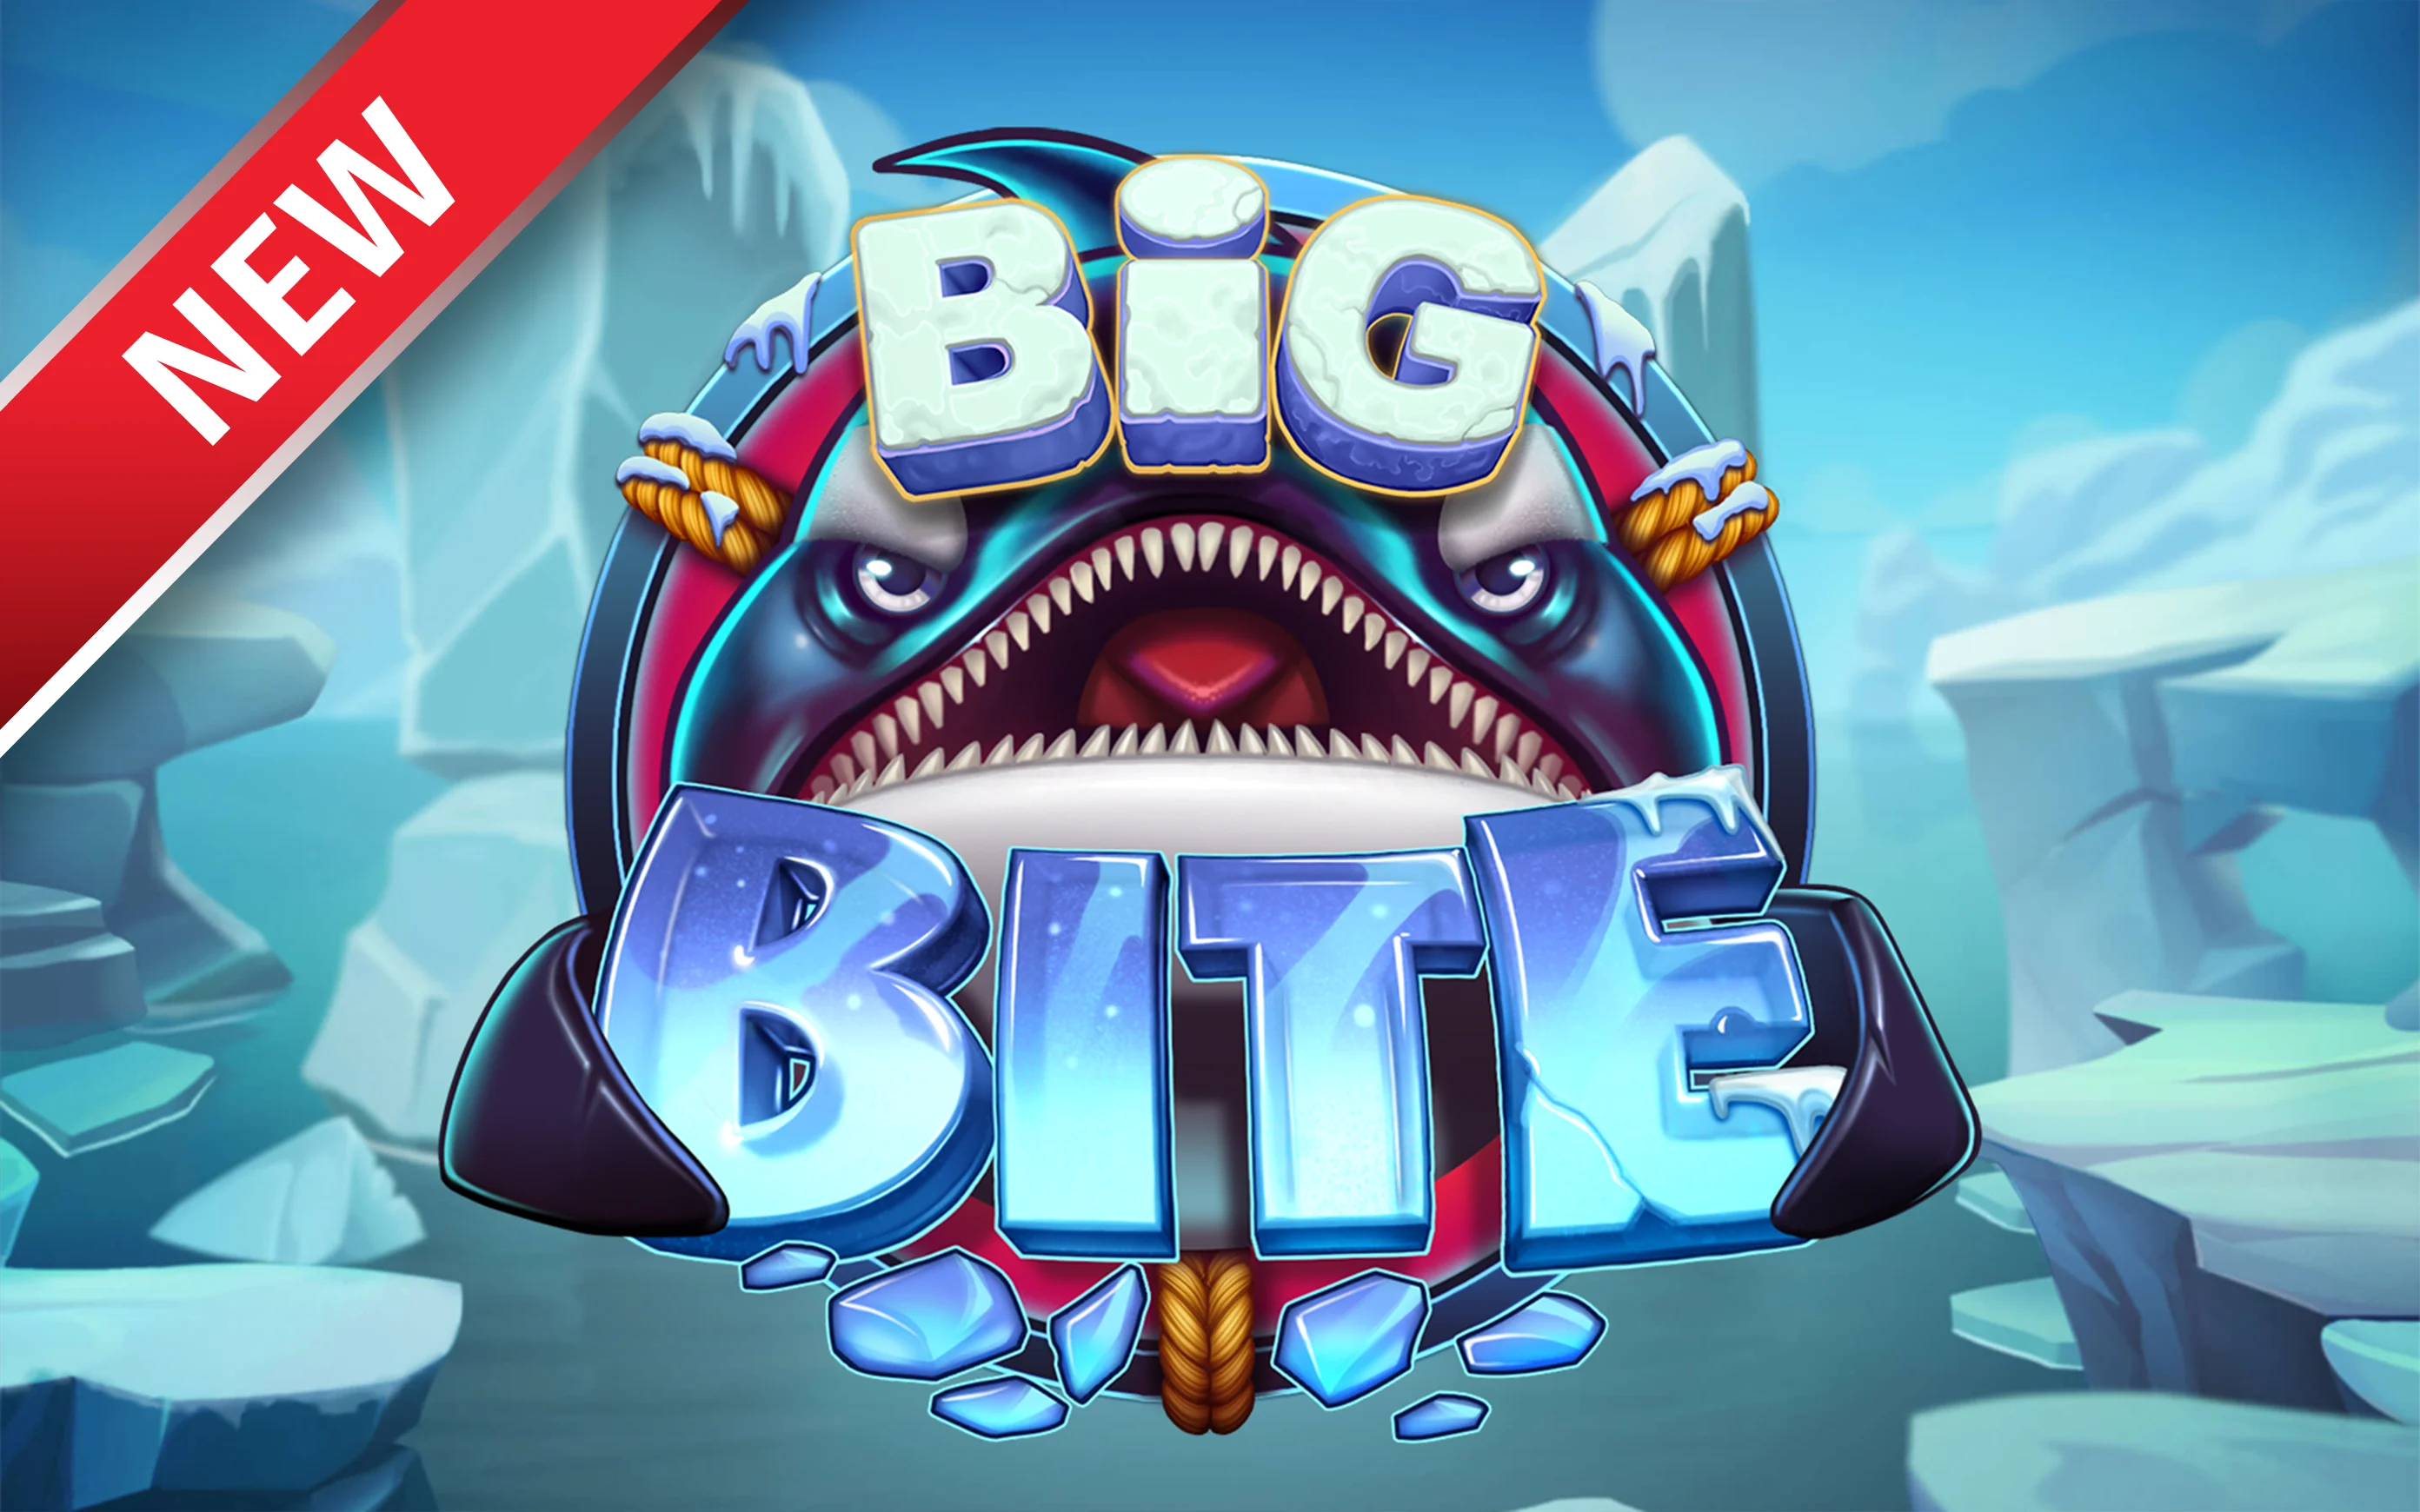 Speel Big Bite op Starcasino.be online casino